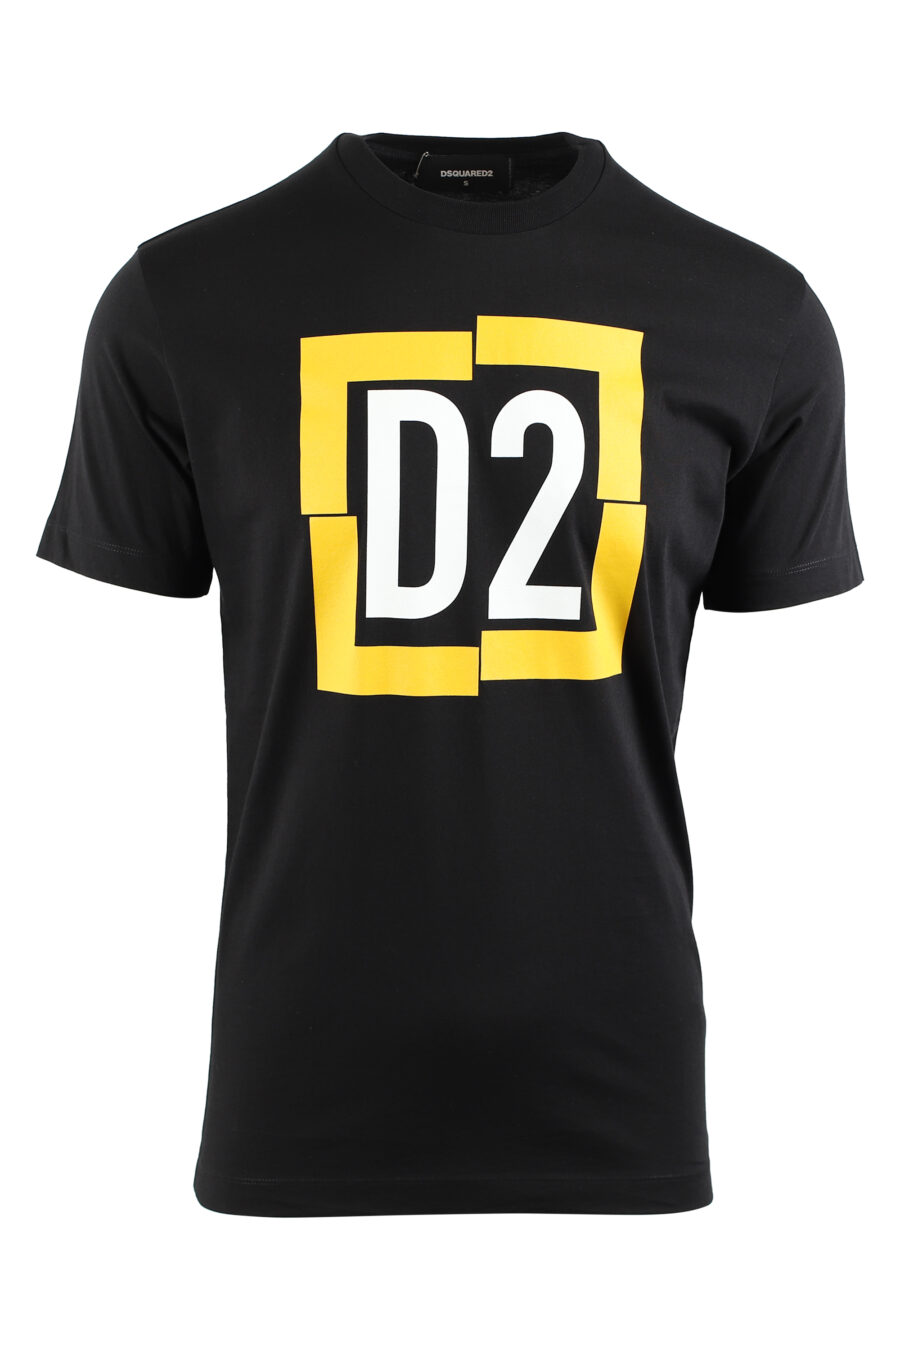 Camiseta negra con maxilogo "d2" en cuadro amarillo - IMG 0470